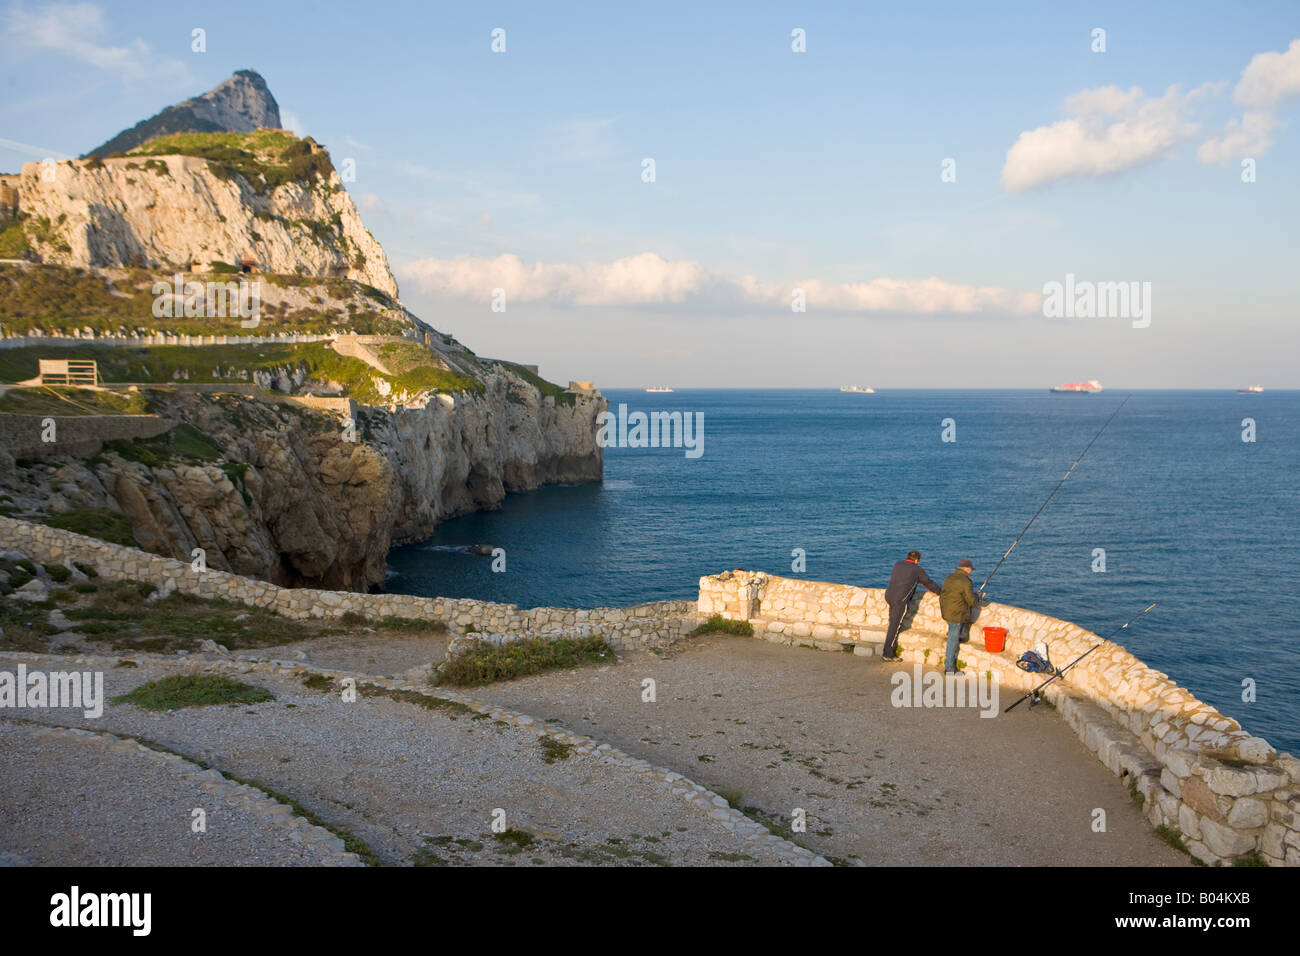 Persone di pesca nel Mar Mediterraneo da una parete a Europa Point, Gibilterra, Costa de la Luz, la Gran Bretagna, l'Europa. Foto Stock